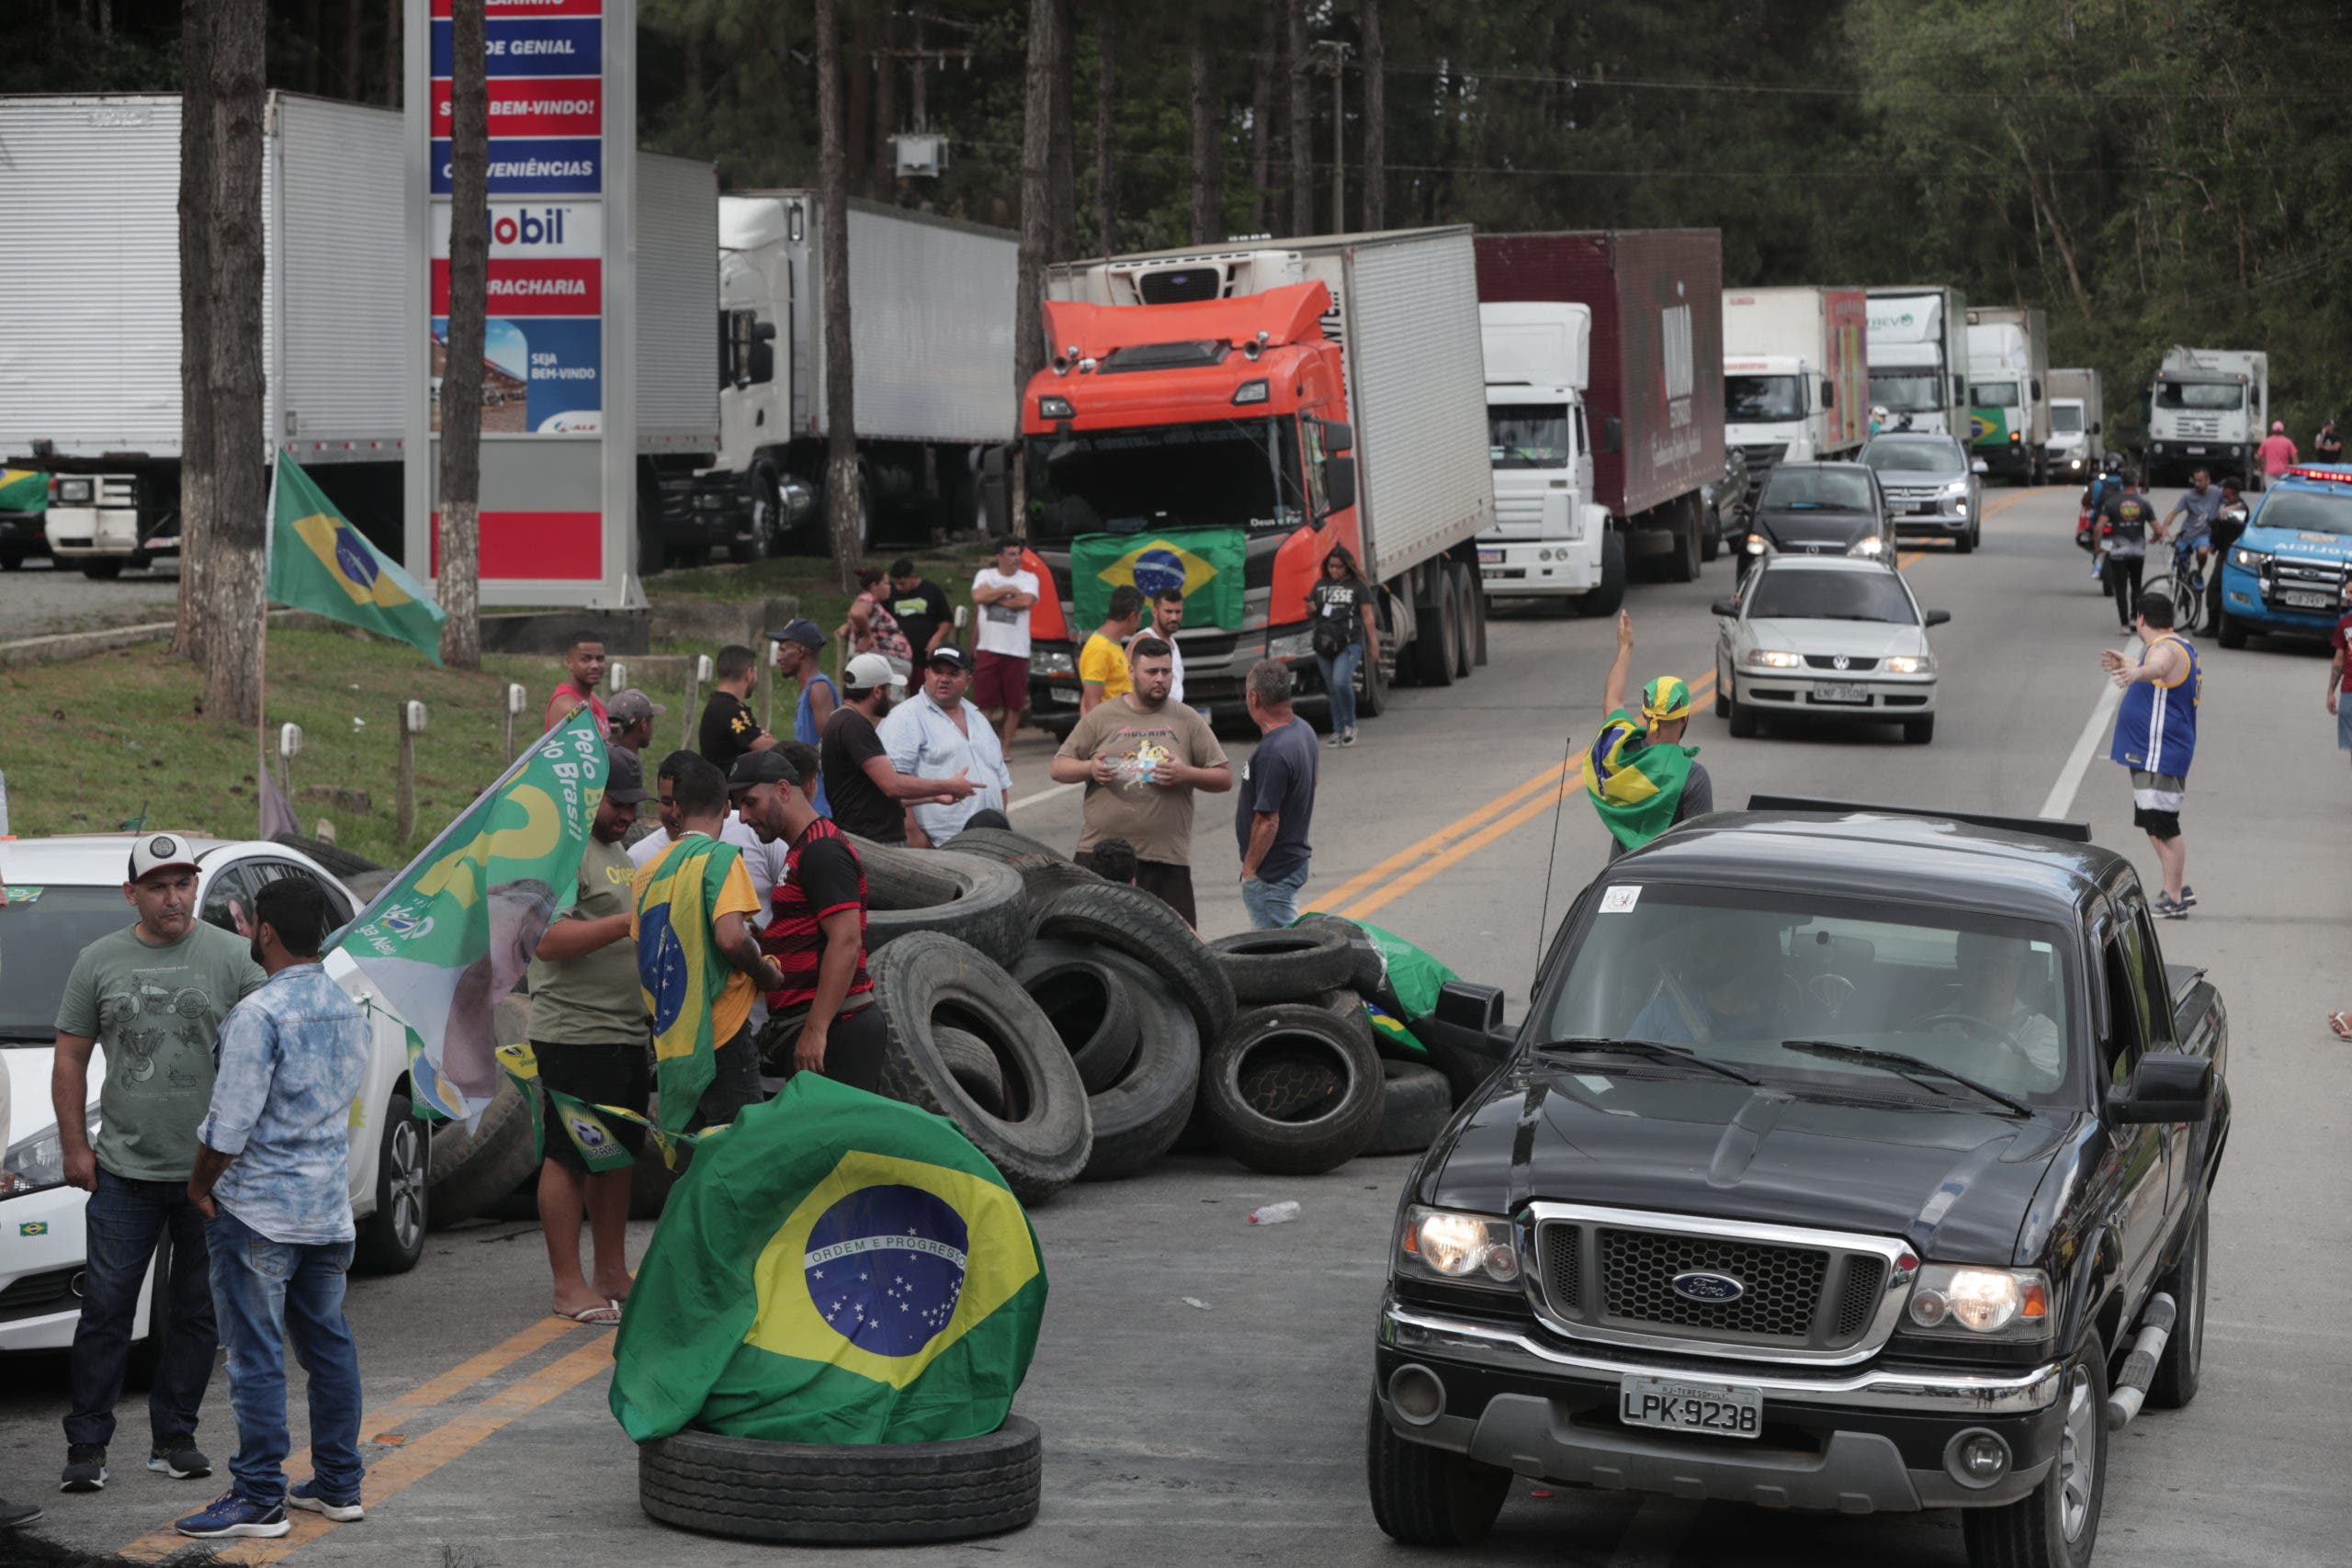 Silencio de Bolsonaro durante 24 horas mantiene en vilo a Brasil